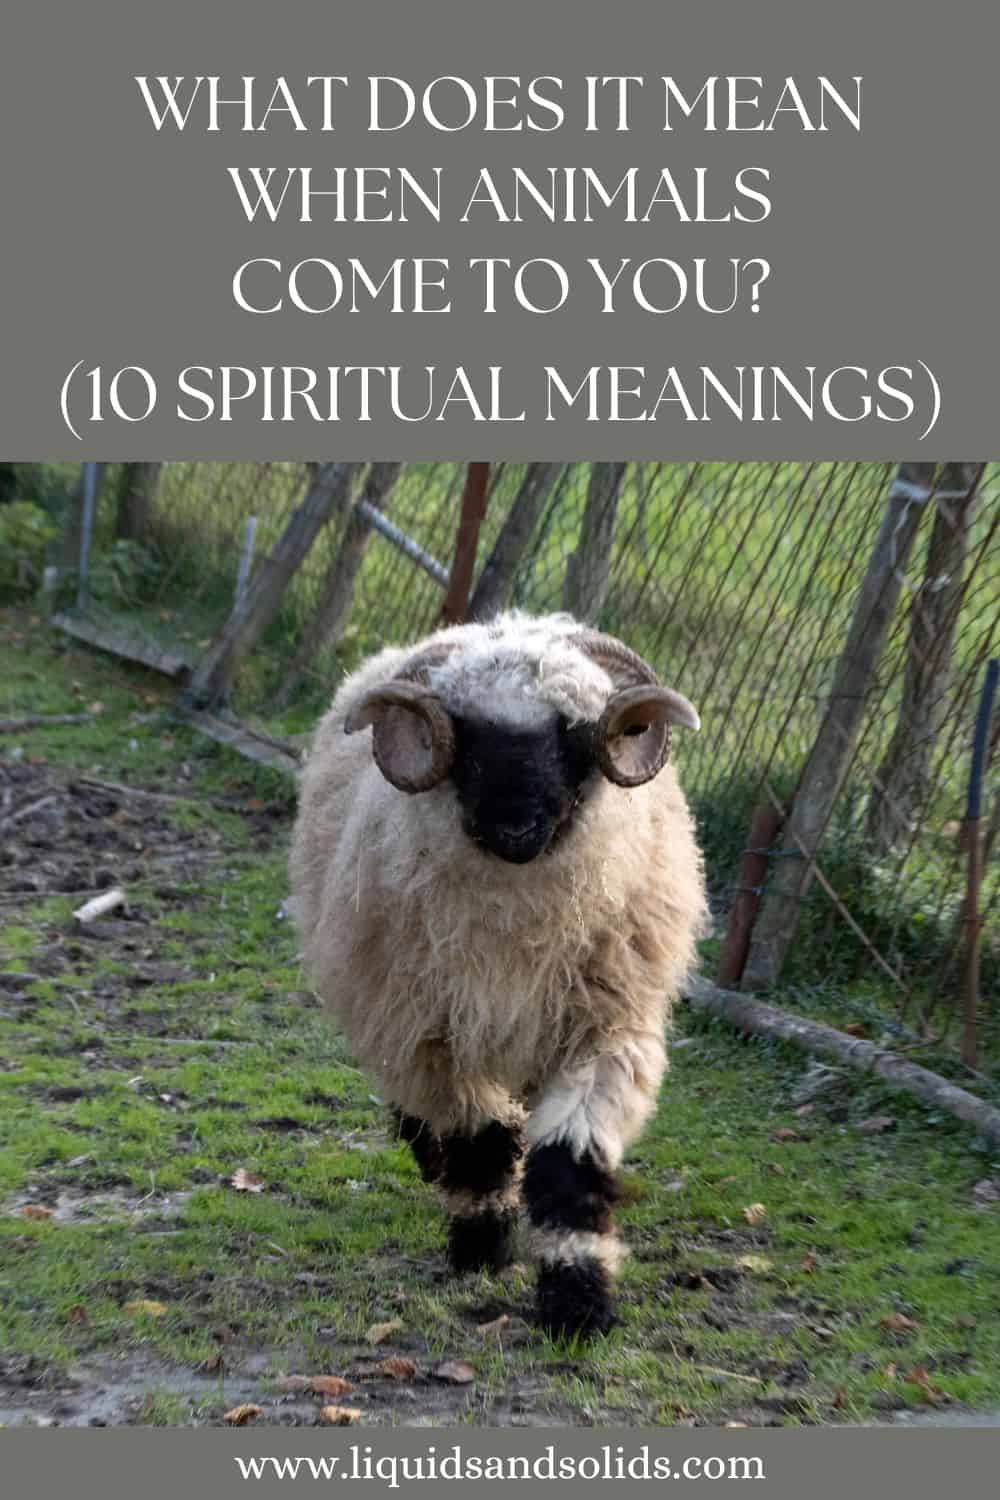  რას ნიშნავს, როცა ცხოველები შენთან მოდიან? (10 სულიერი მნიშვნელობა)